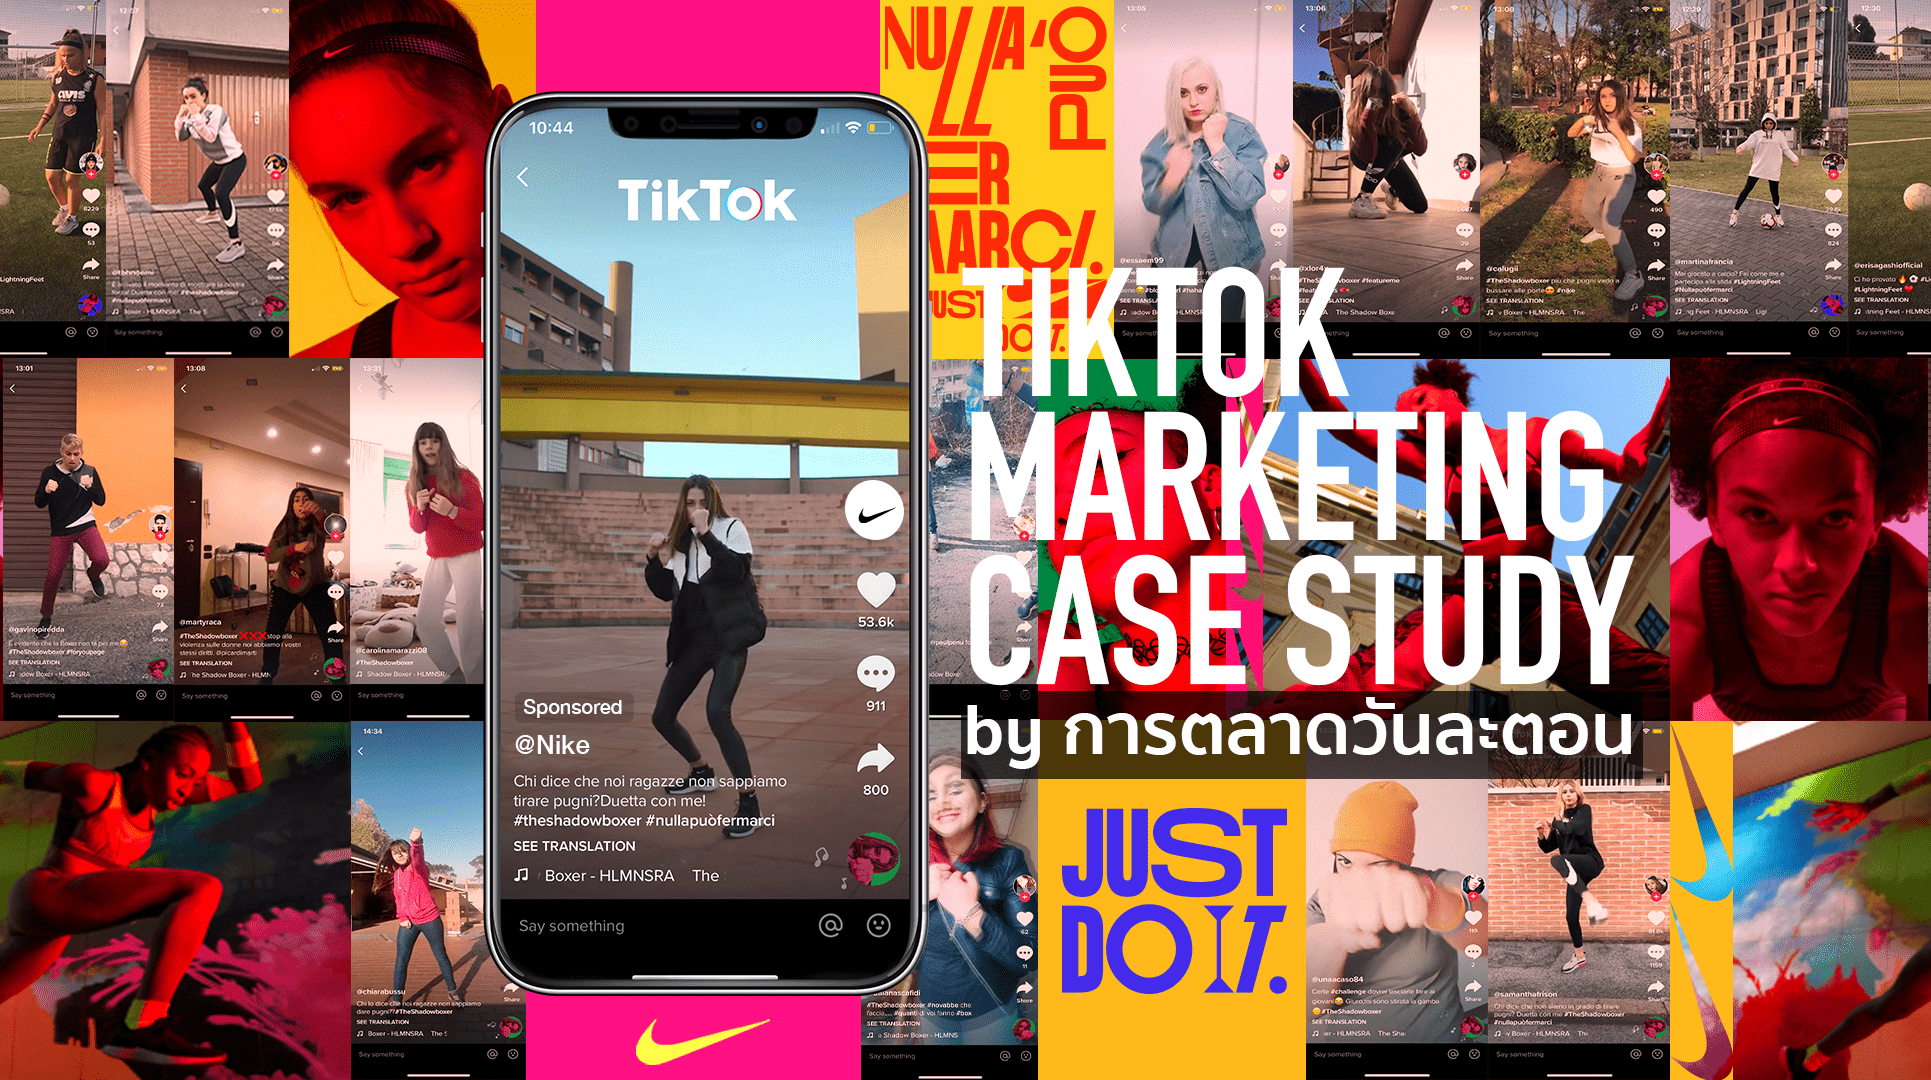 เมื่อ Nike ใช้ TikTok Marketing เพื่อปลุกกระแสการเล่นกีฬาในกลุ่มสาวมิลาน Gen Z